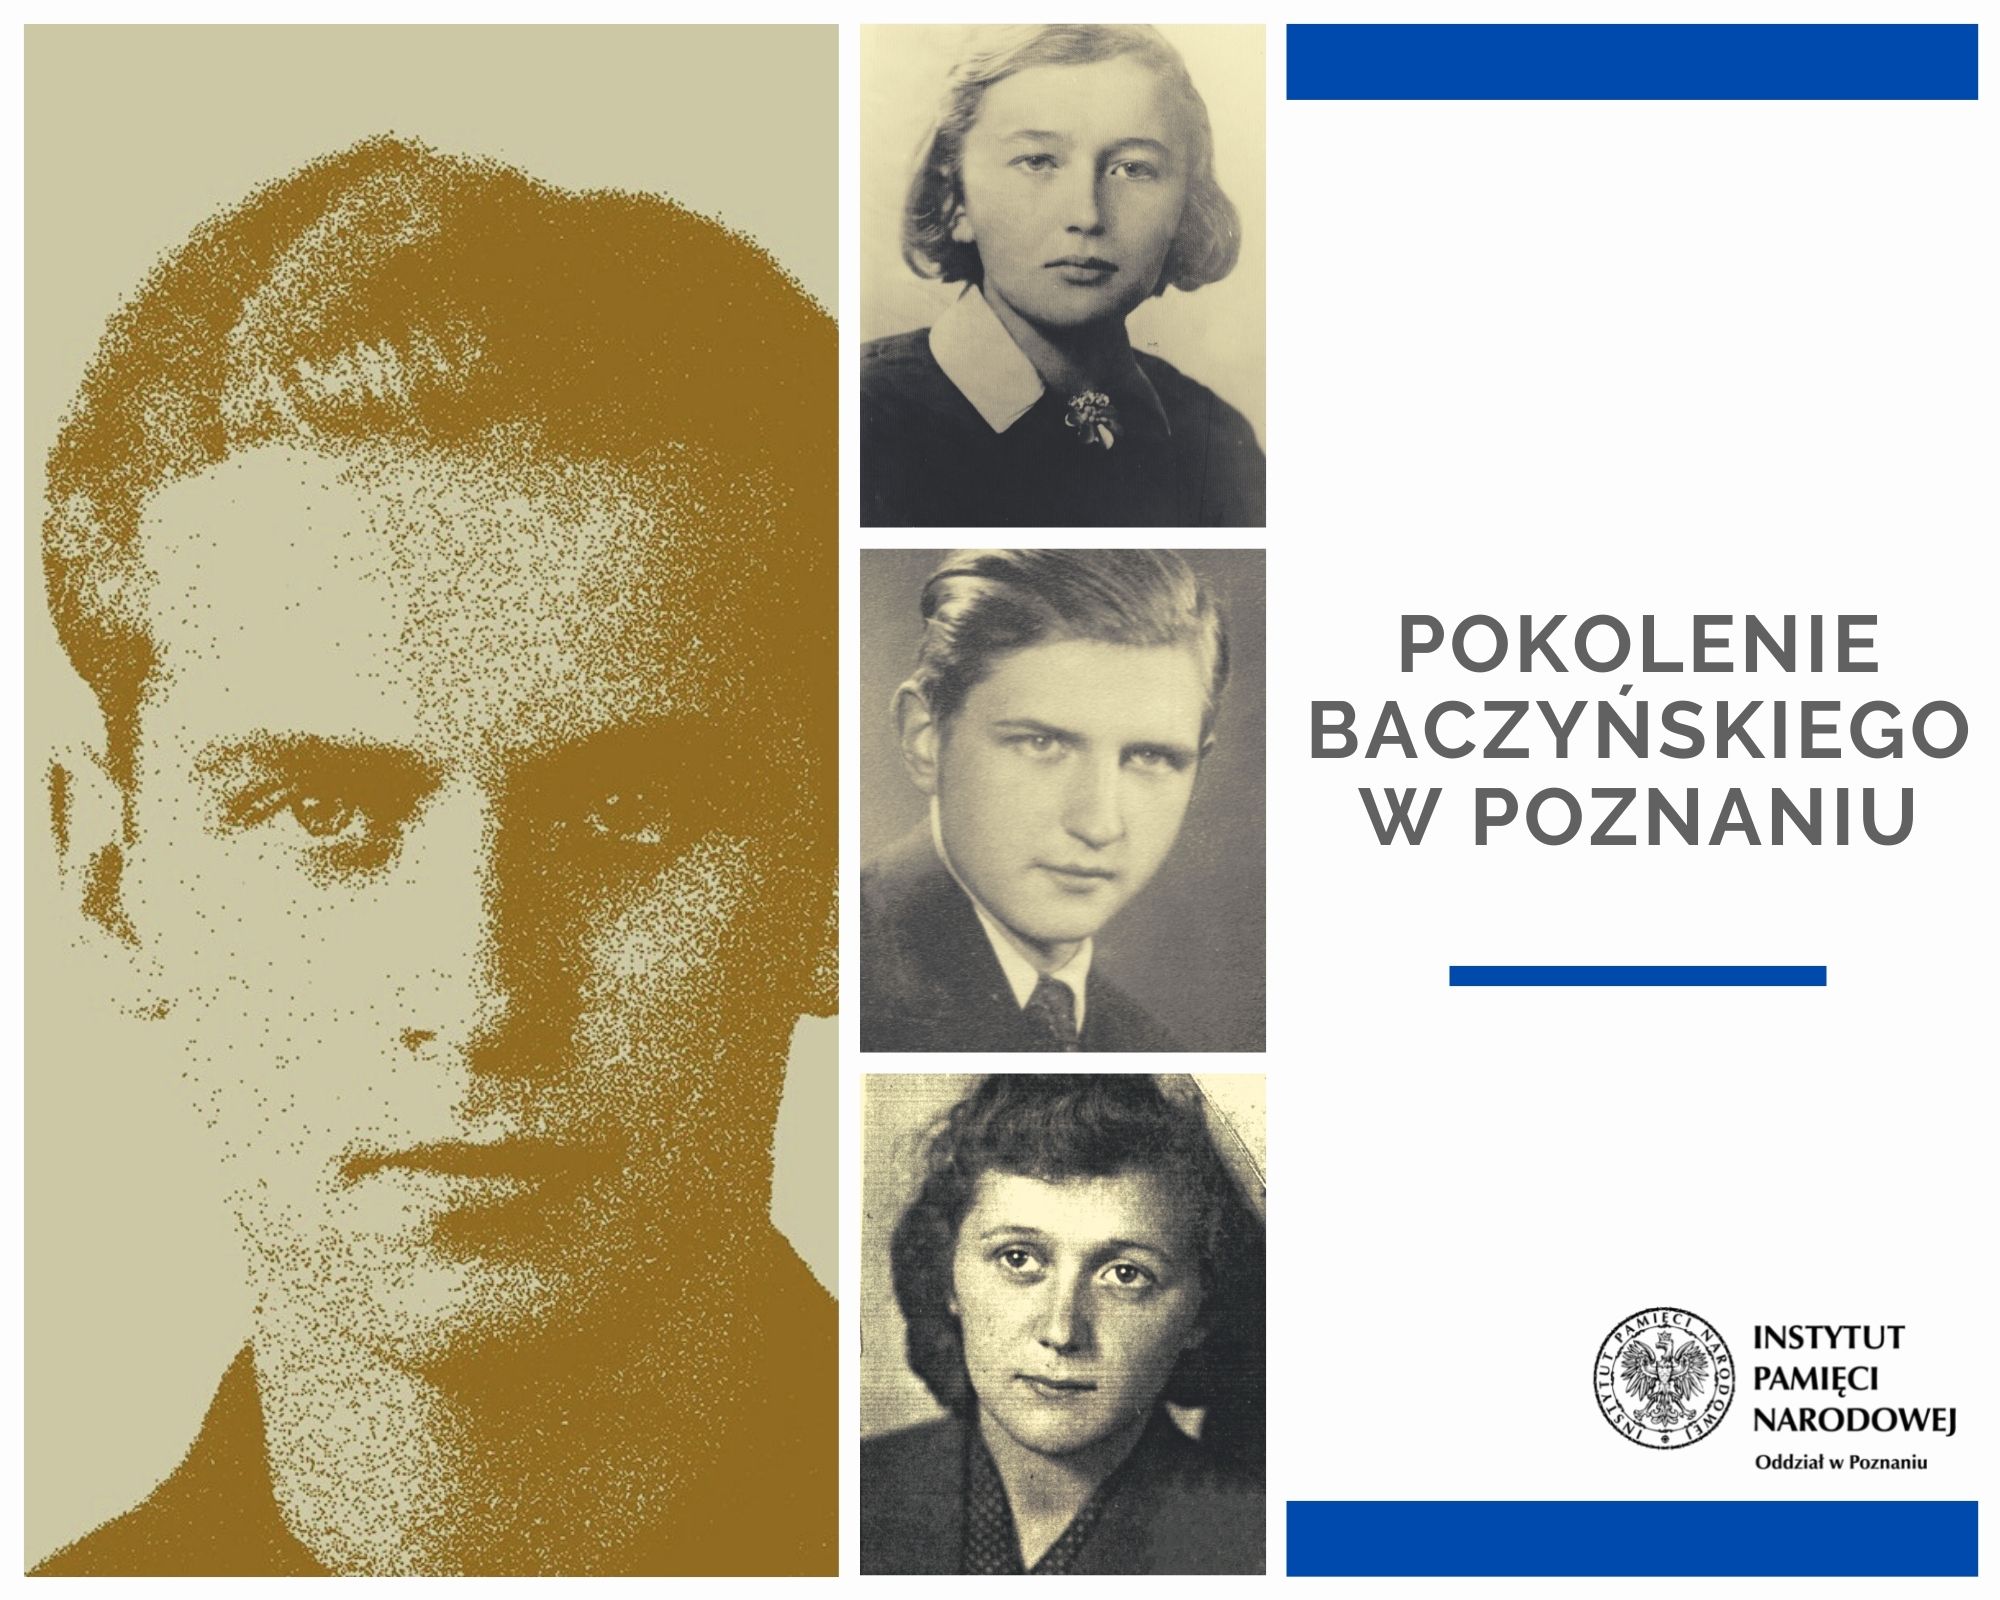 Pokoleniu Baczyńskiego wystawa  - Instytut Pamięci Narodowej w Poznaniu